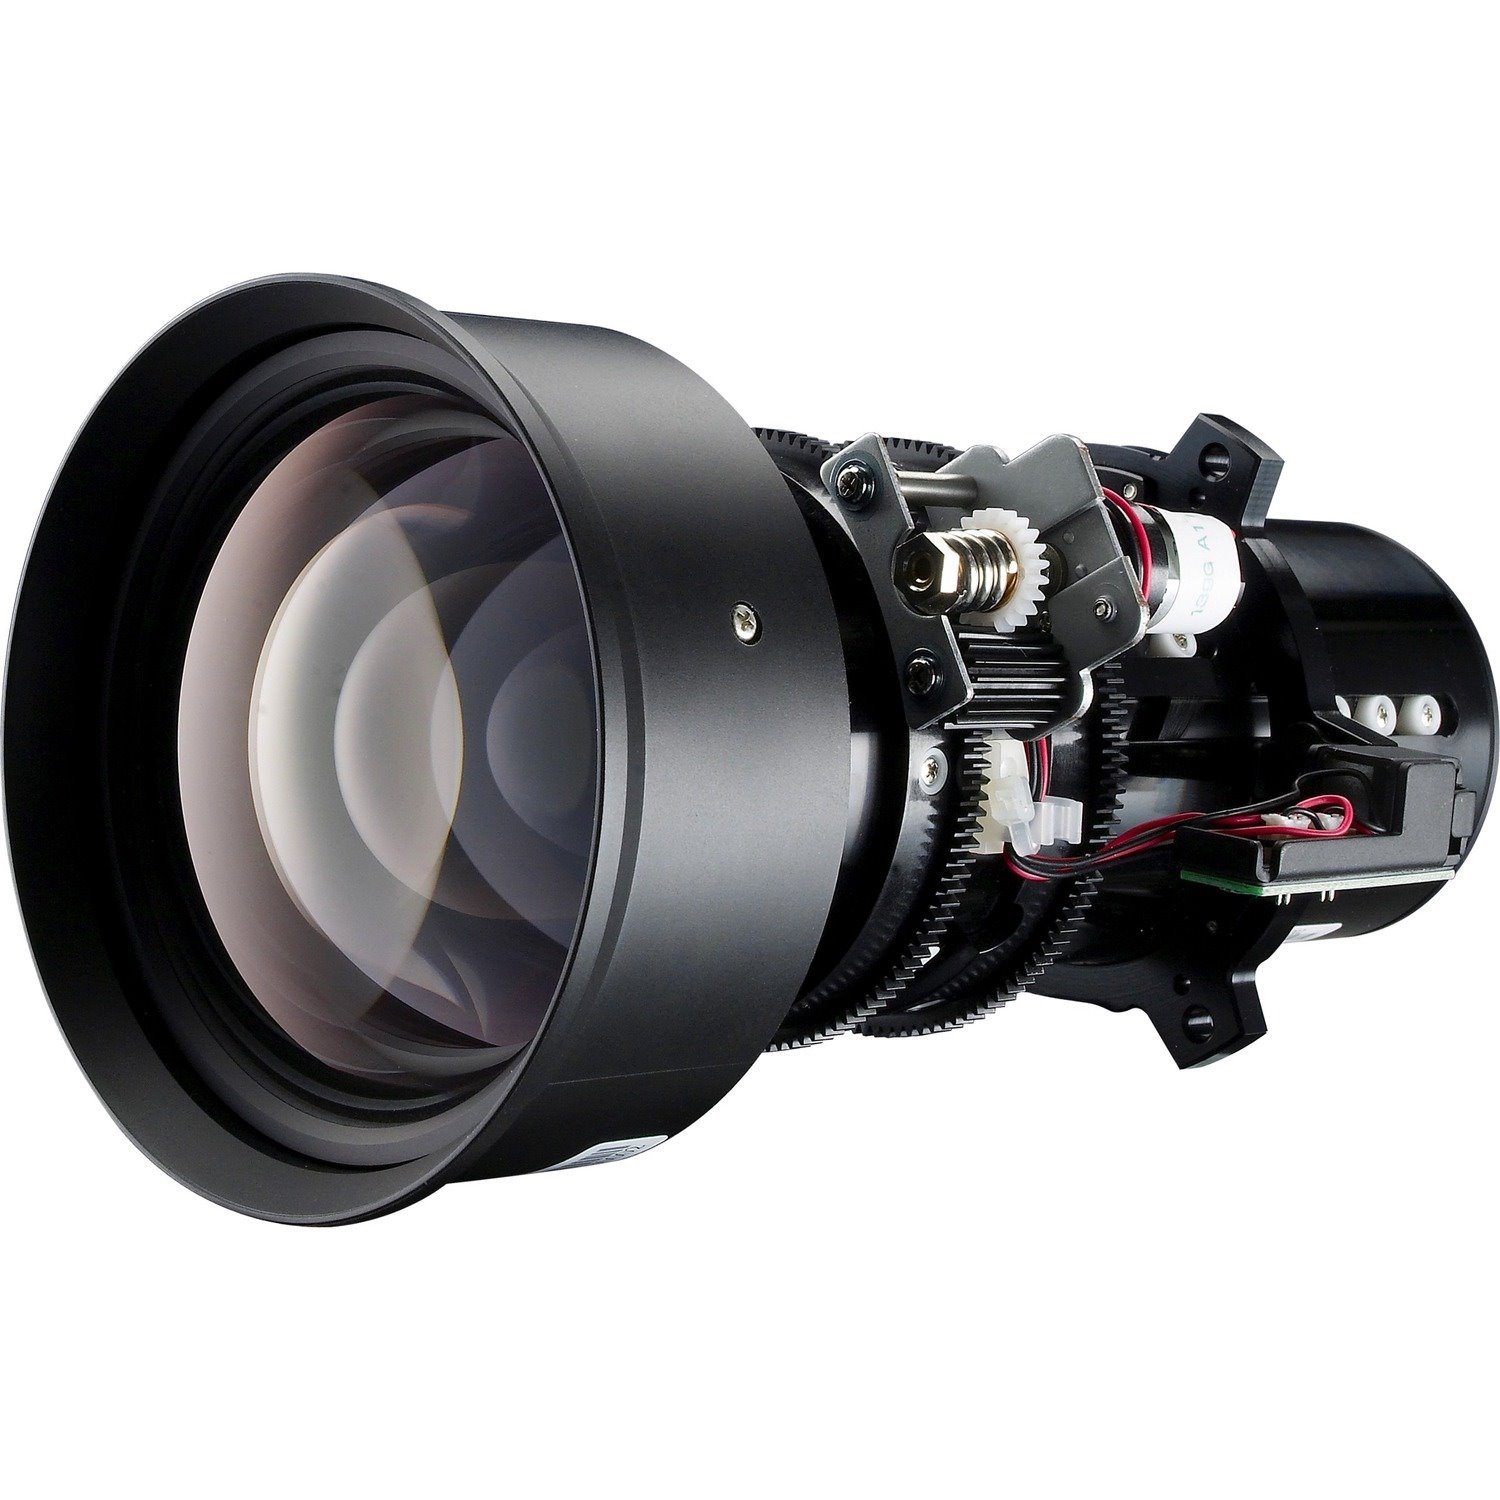 Optomaf/3.4 - Zoom Lens